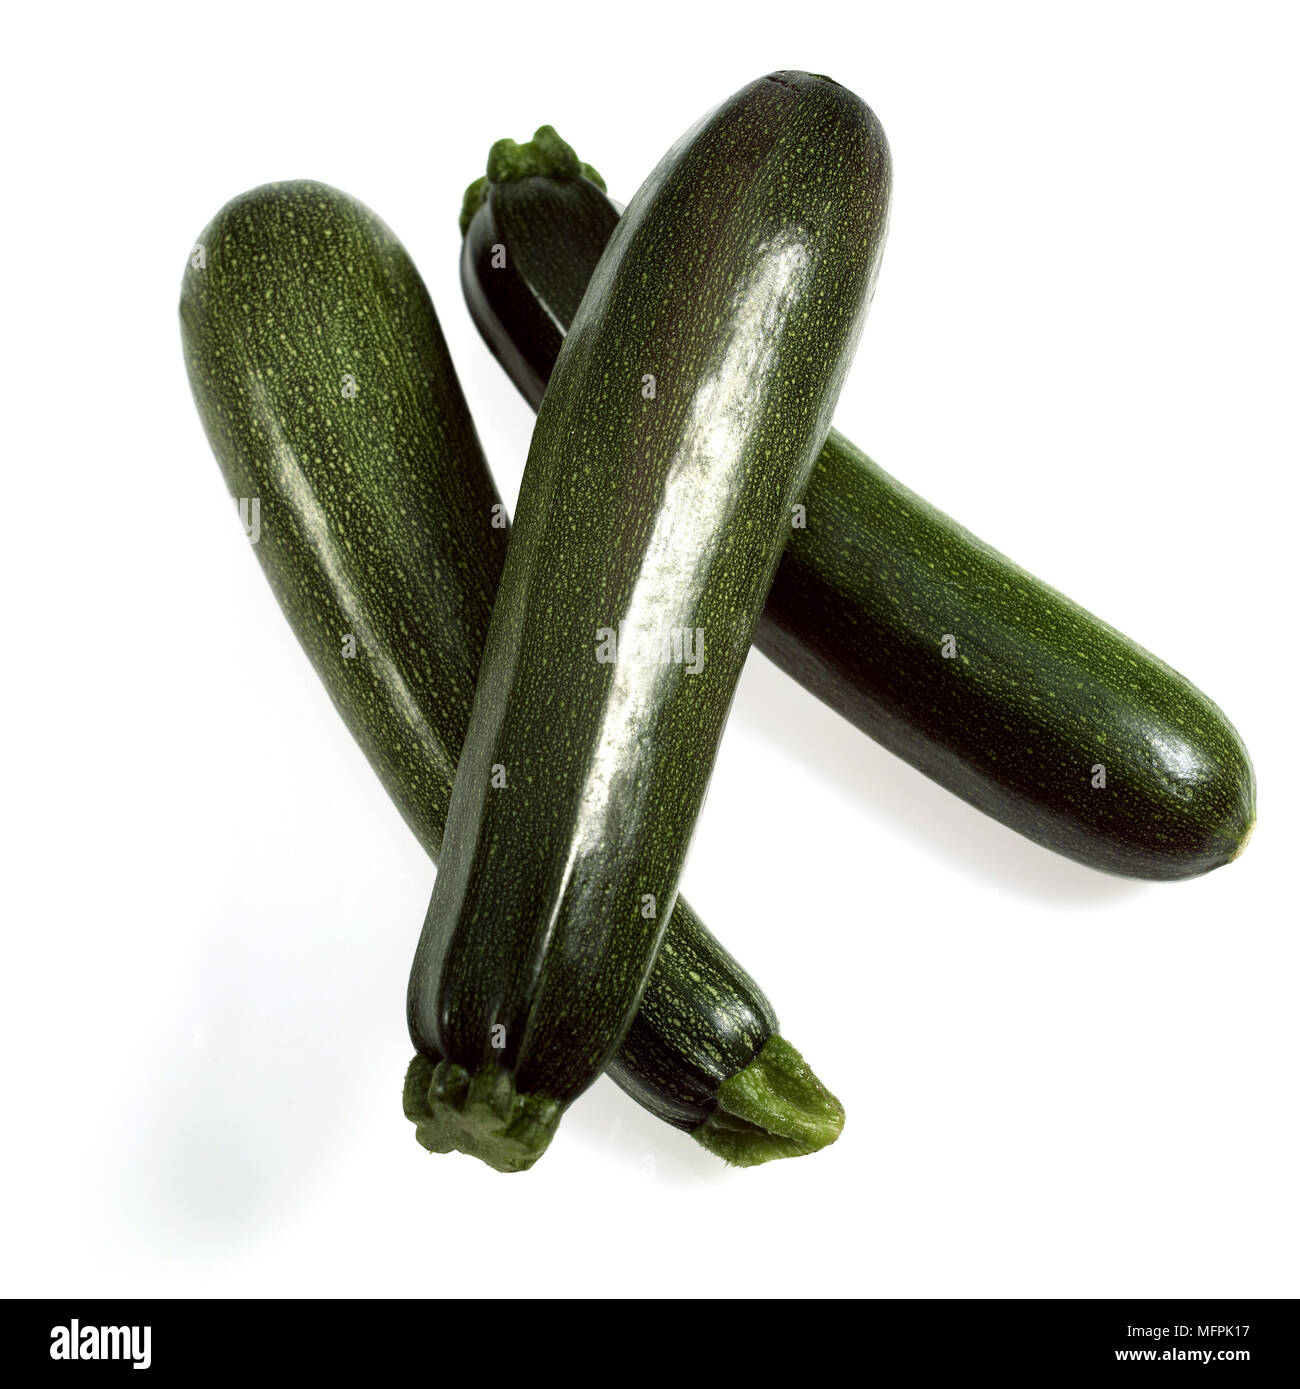 Lange Zucchini oder Zucchini, Cucurbita pepo, Gemüse vor weißem Hintergrund Stockfoto